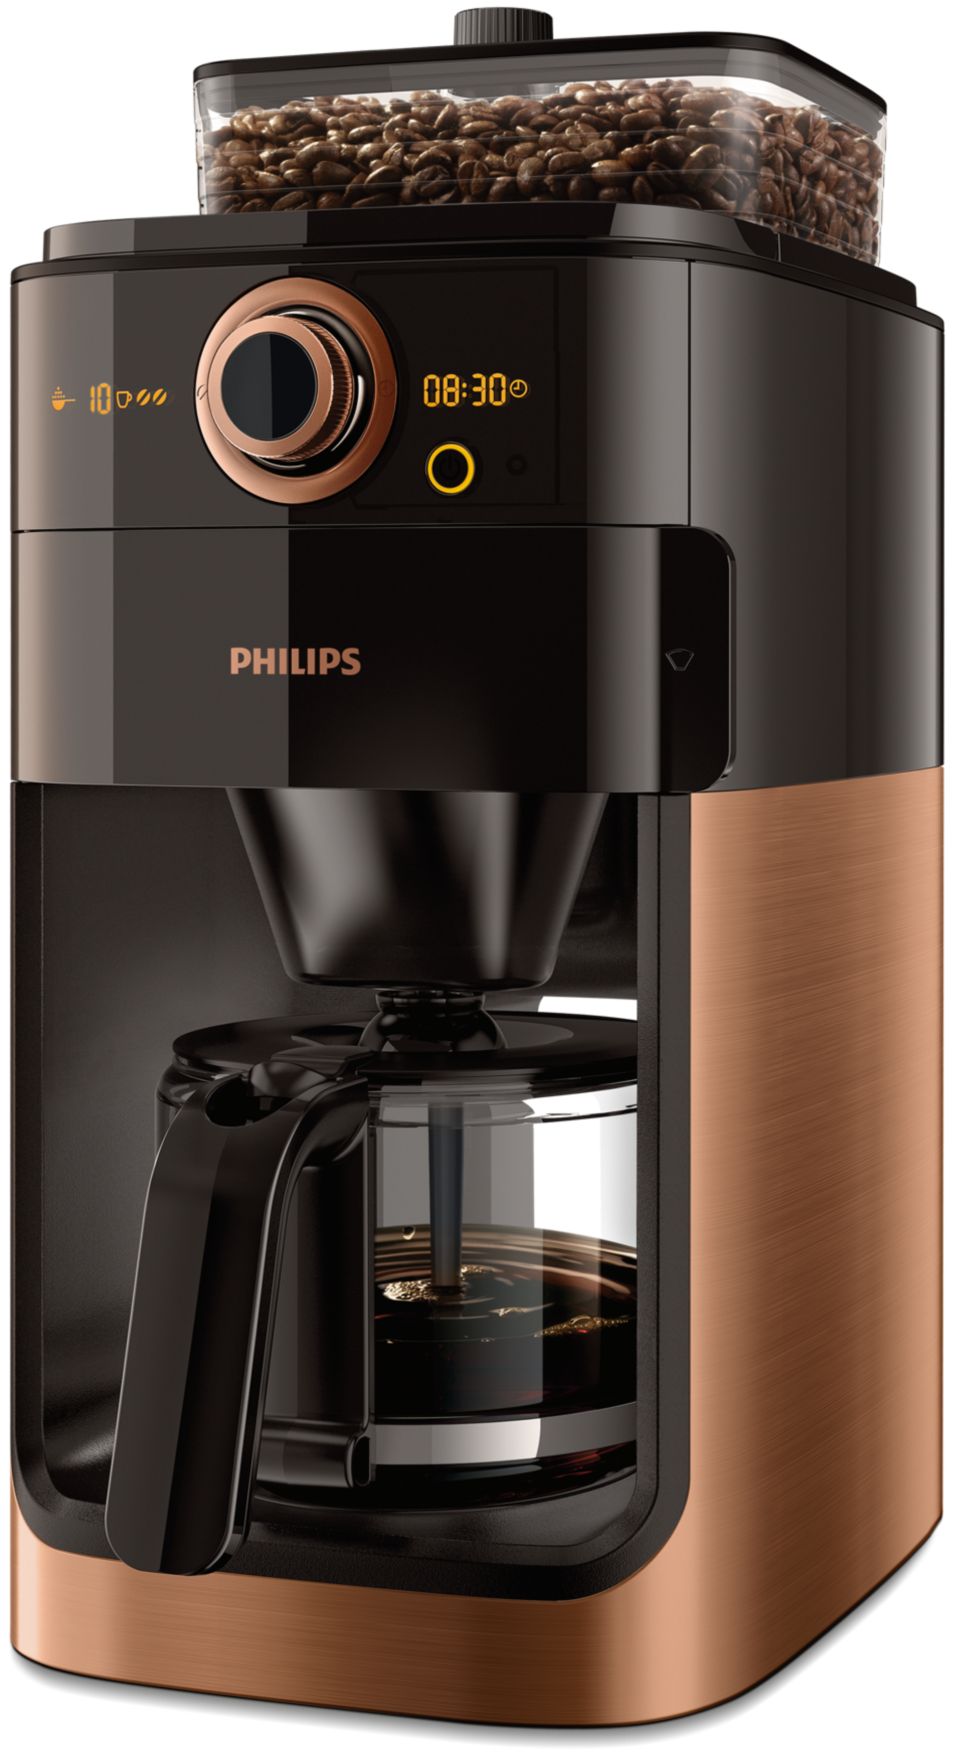 Geaccepteerd constant Torrent Grind & Brew Koffiezetapparaat HD7768/70 | Philips